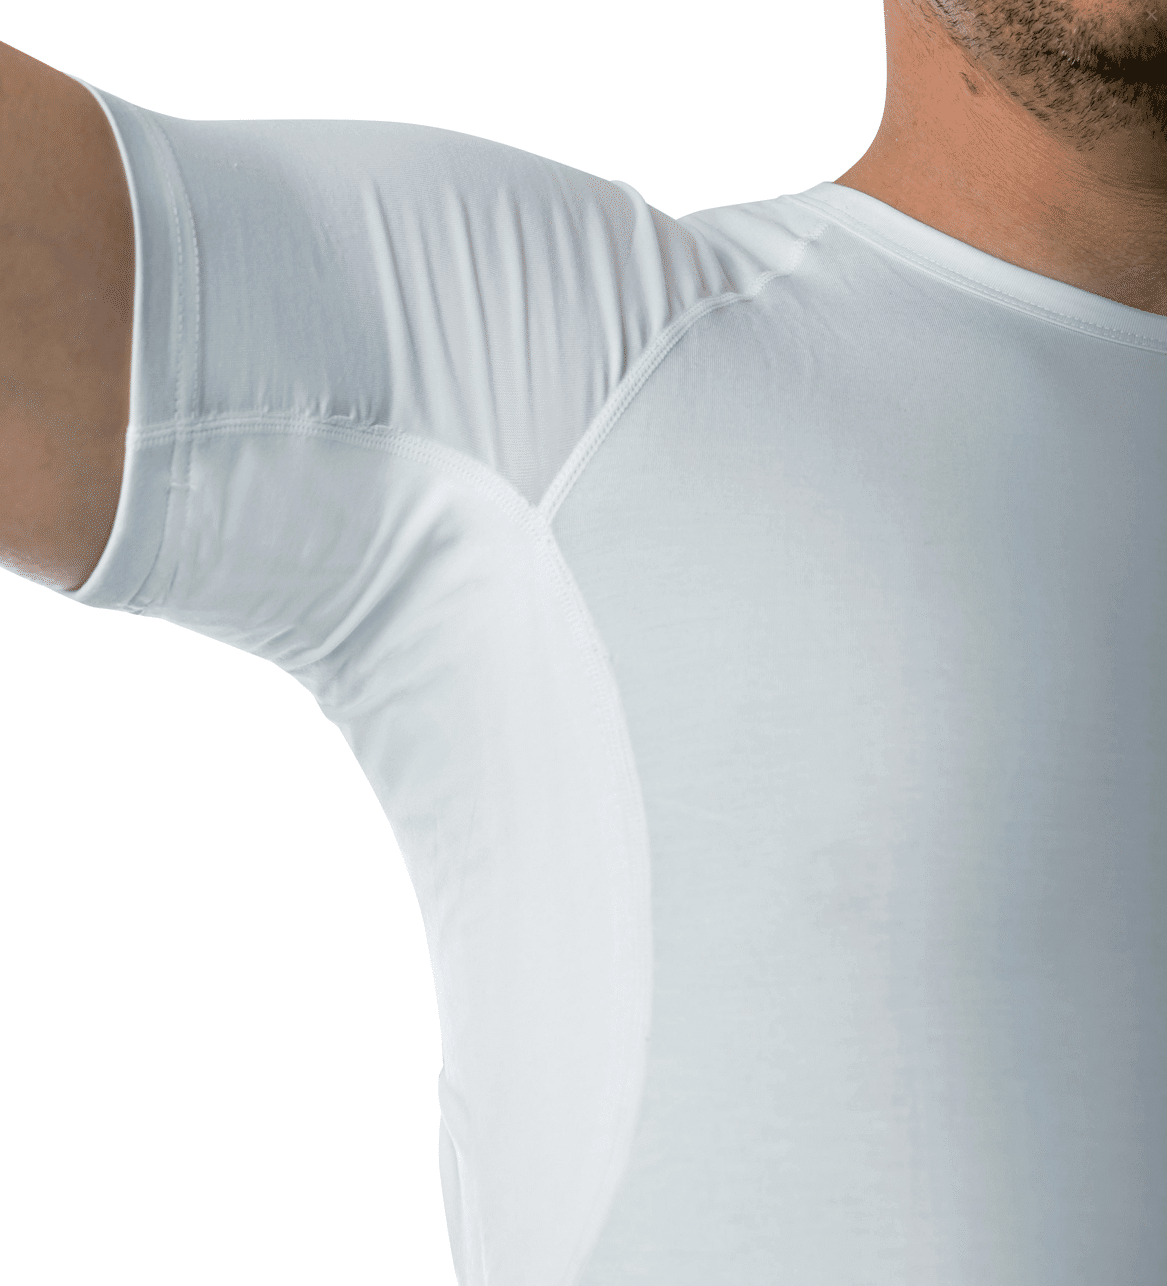 Drywear test anmeldelse erfaring undgå svedpletter på skjorter svedabsorberende undertrøje tshirt t-shirt virker det erfaring med anmeldelse af